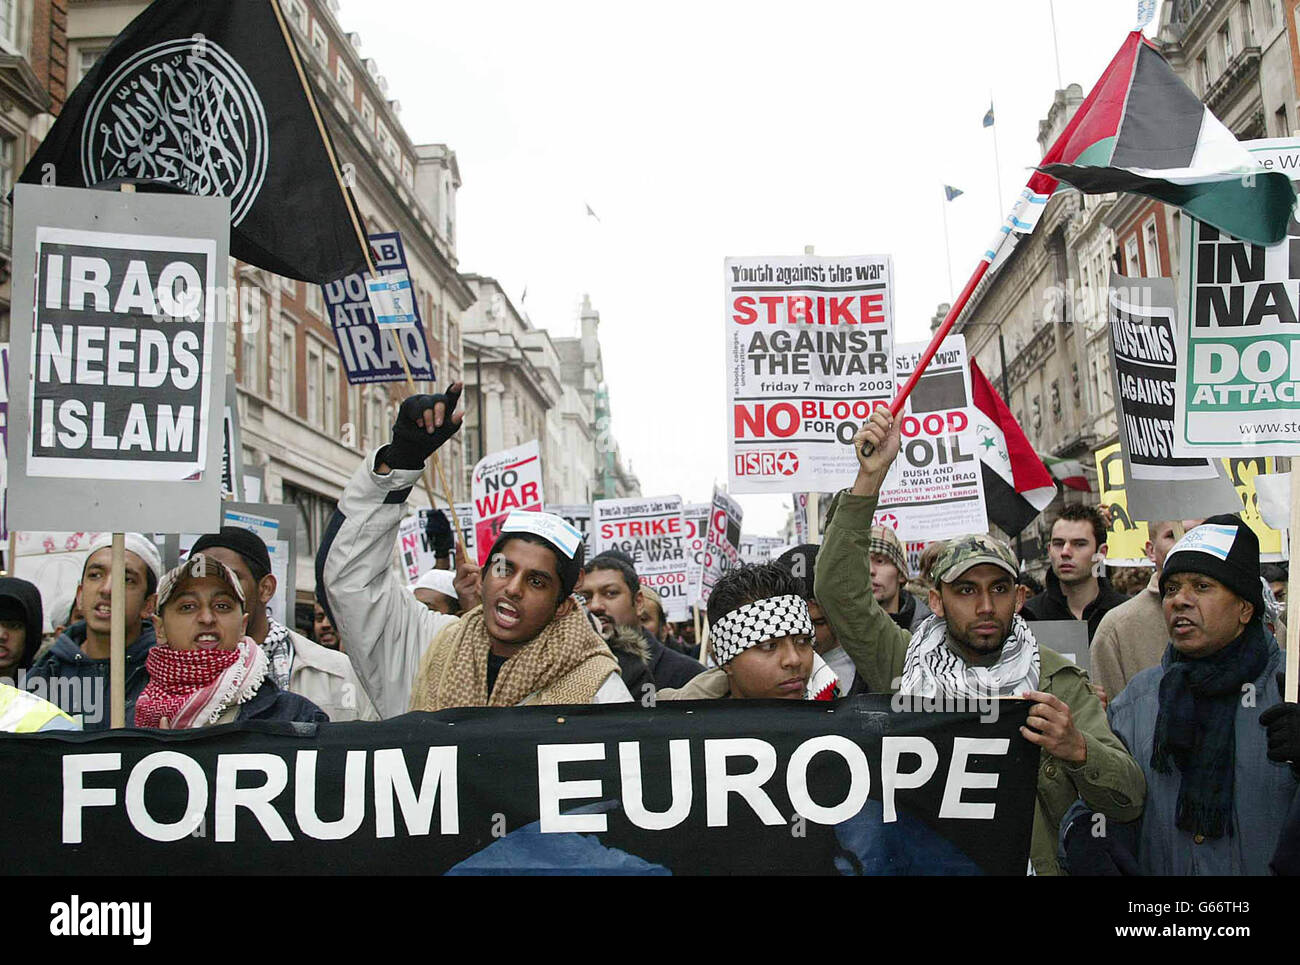 Durante la marcia nel centro di Londra, manifestanti anti contro la guerra, hanno chiesto la fine di qualsiasi azione militare proposta contro l'Iraq. Foto Stock